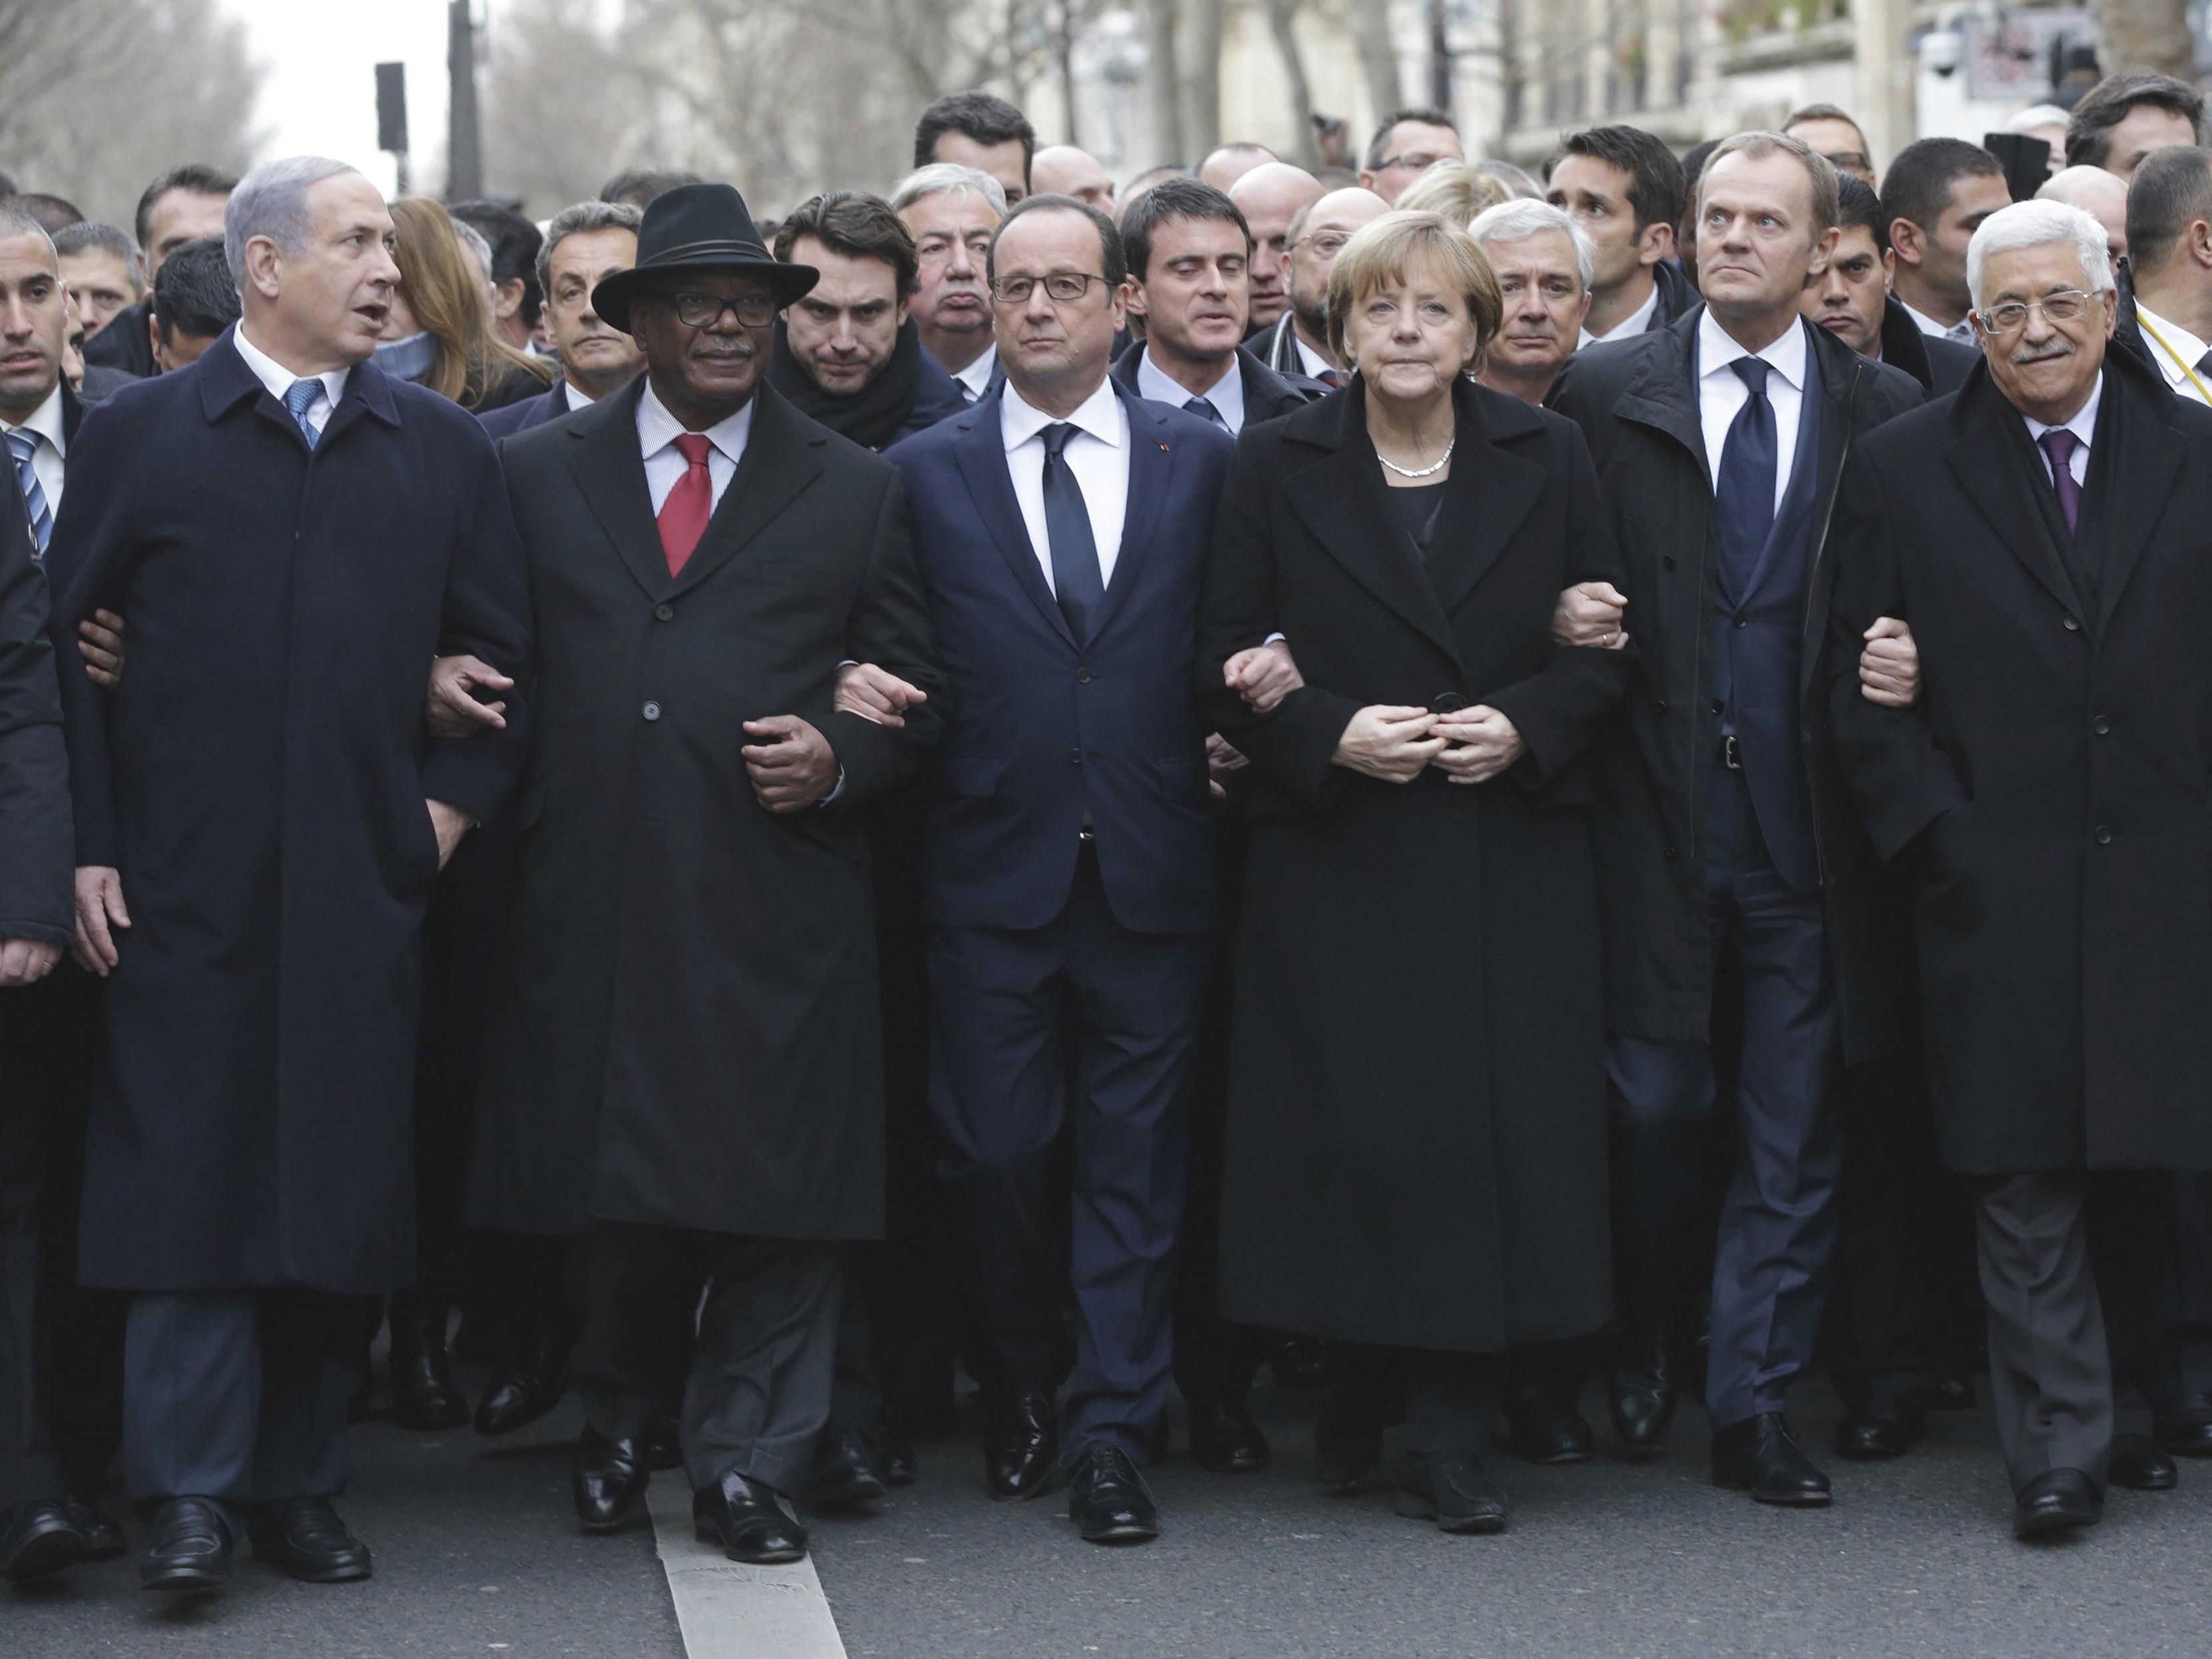 Nicolas Sarkozy in Reihe 2 zu Beginn des Trauermarschs.